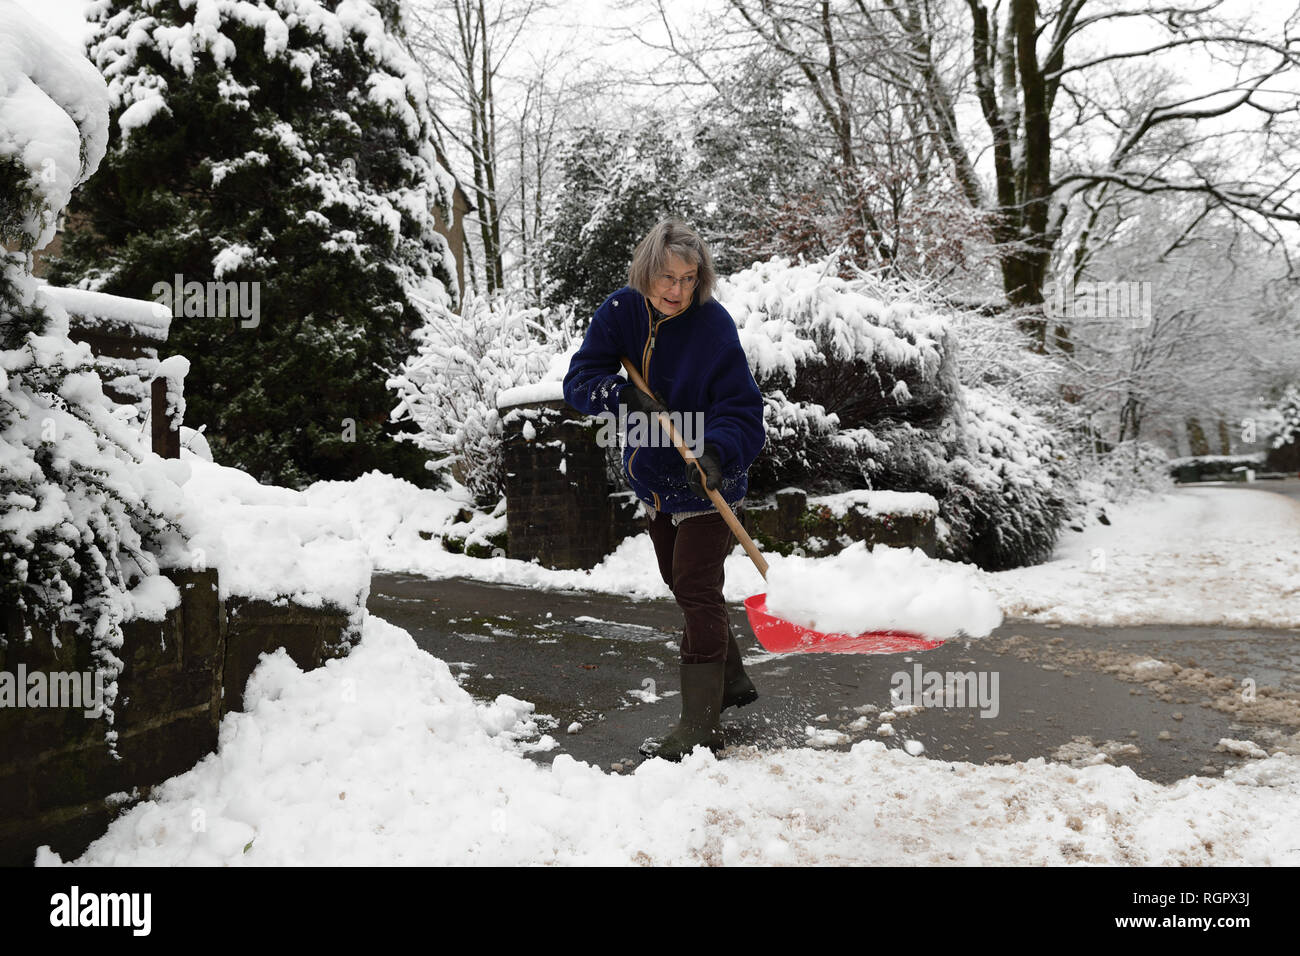 Sarah Filcek palas de nieve fuera de su casa en Buxton, Derbyshire, Gran Bretaña se prepara para la noche más fría del invierno tan lejos, con nevadas 'sensible' probable que cause más demoras de viajes y el cierre de las escuelas. Foto de stock